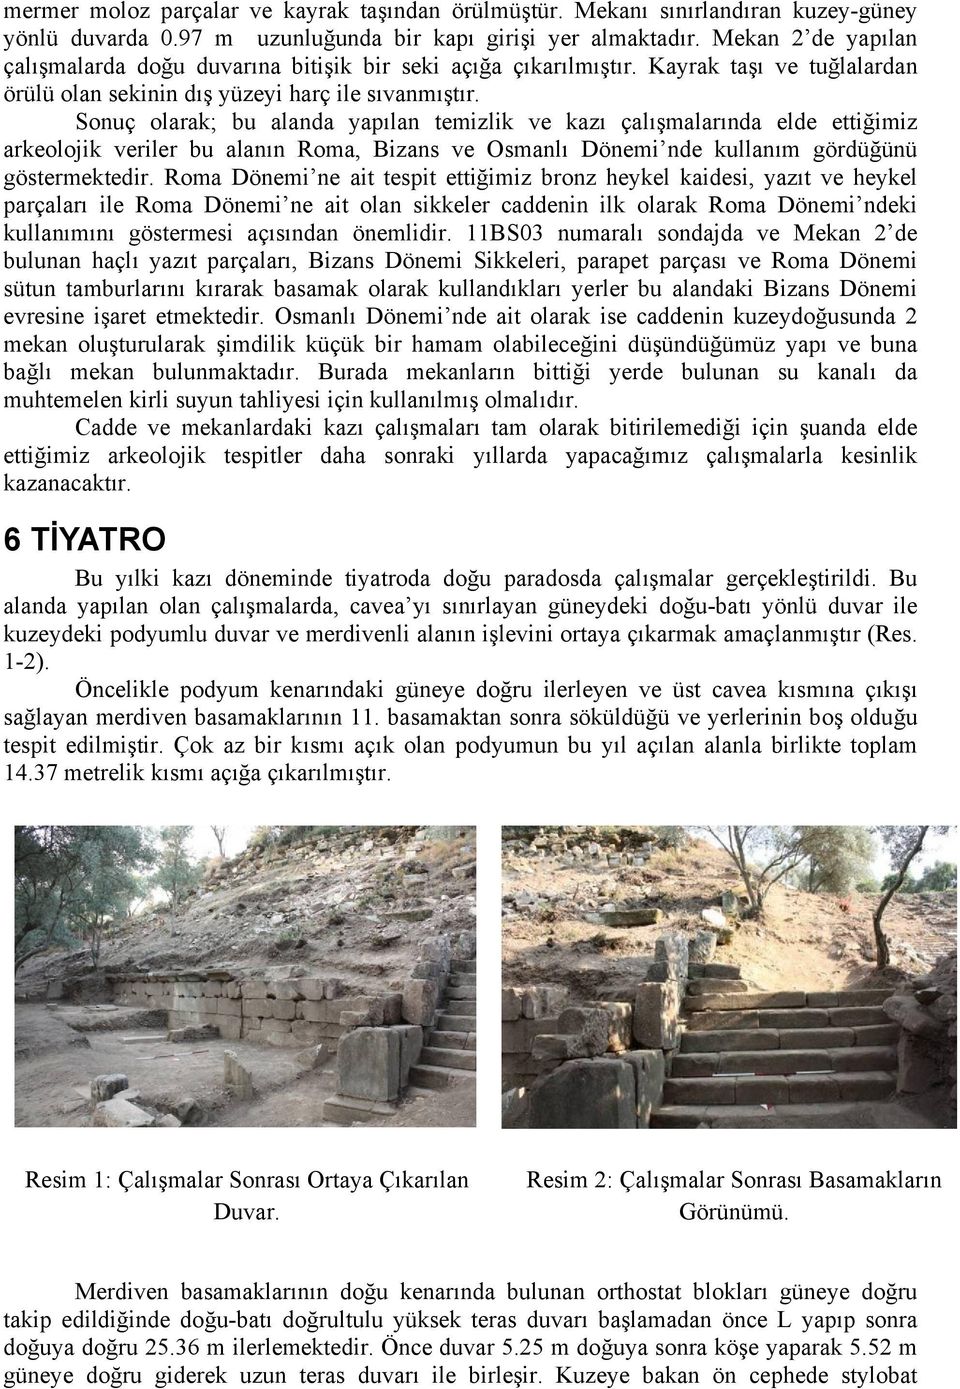 Sonuç olarak; bu alanda yapılan temizlik ve kazı çalışmalarında elde ettiğimiz arkeolojik veriler bu alanın Roma, Bizans ve Osmanlı Dönemi nde kullanım gördüğünü göstermektedir.